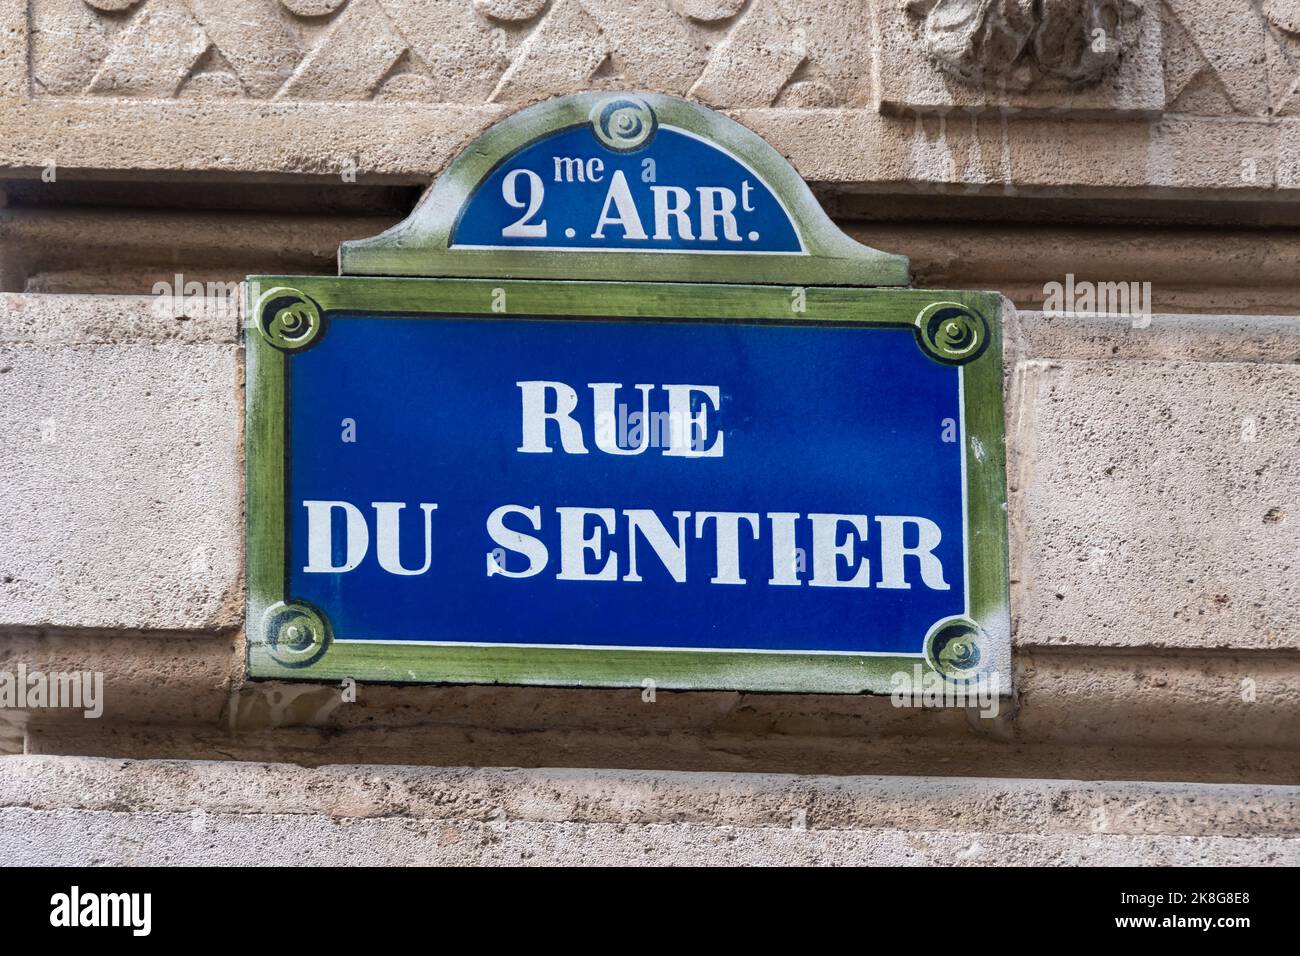 Tradizionale cartello di strada parigino con scritta 'Rue du Sentier', situato nella zona specializzata nell'industria tessile a Parigi, Francia Foto Stock